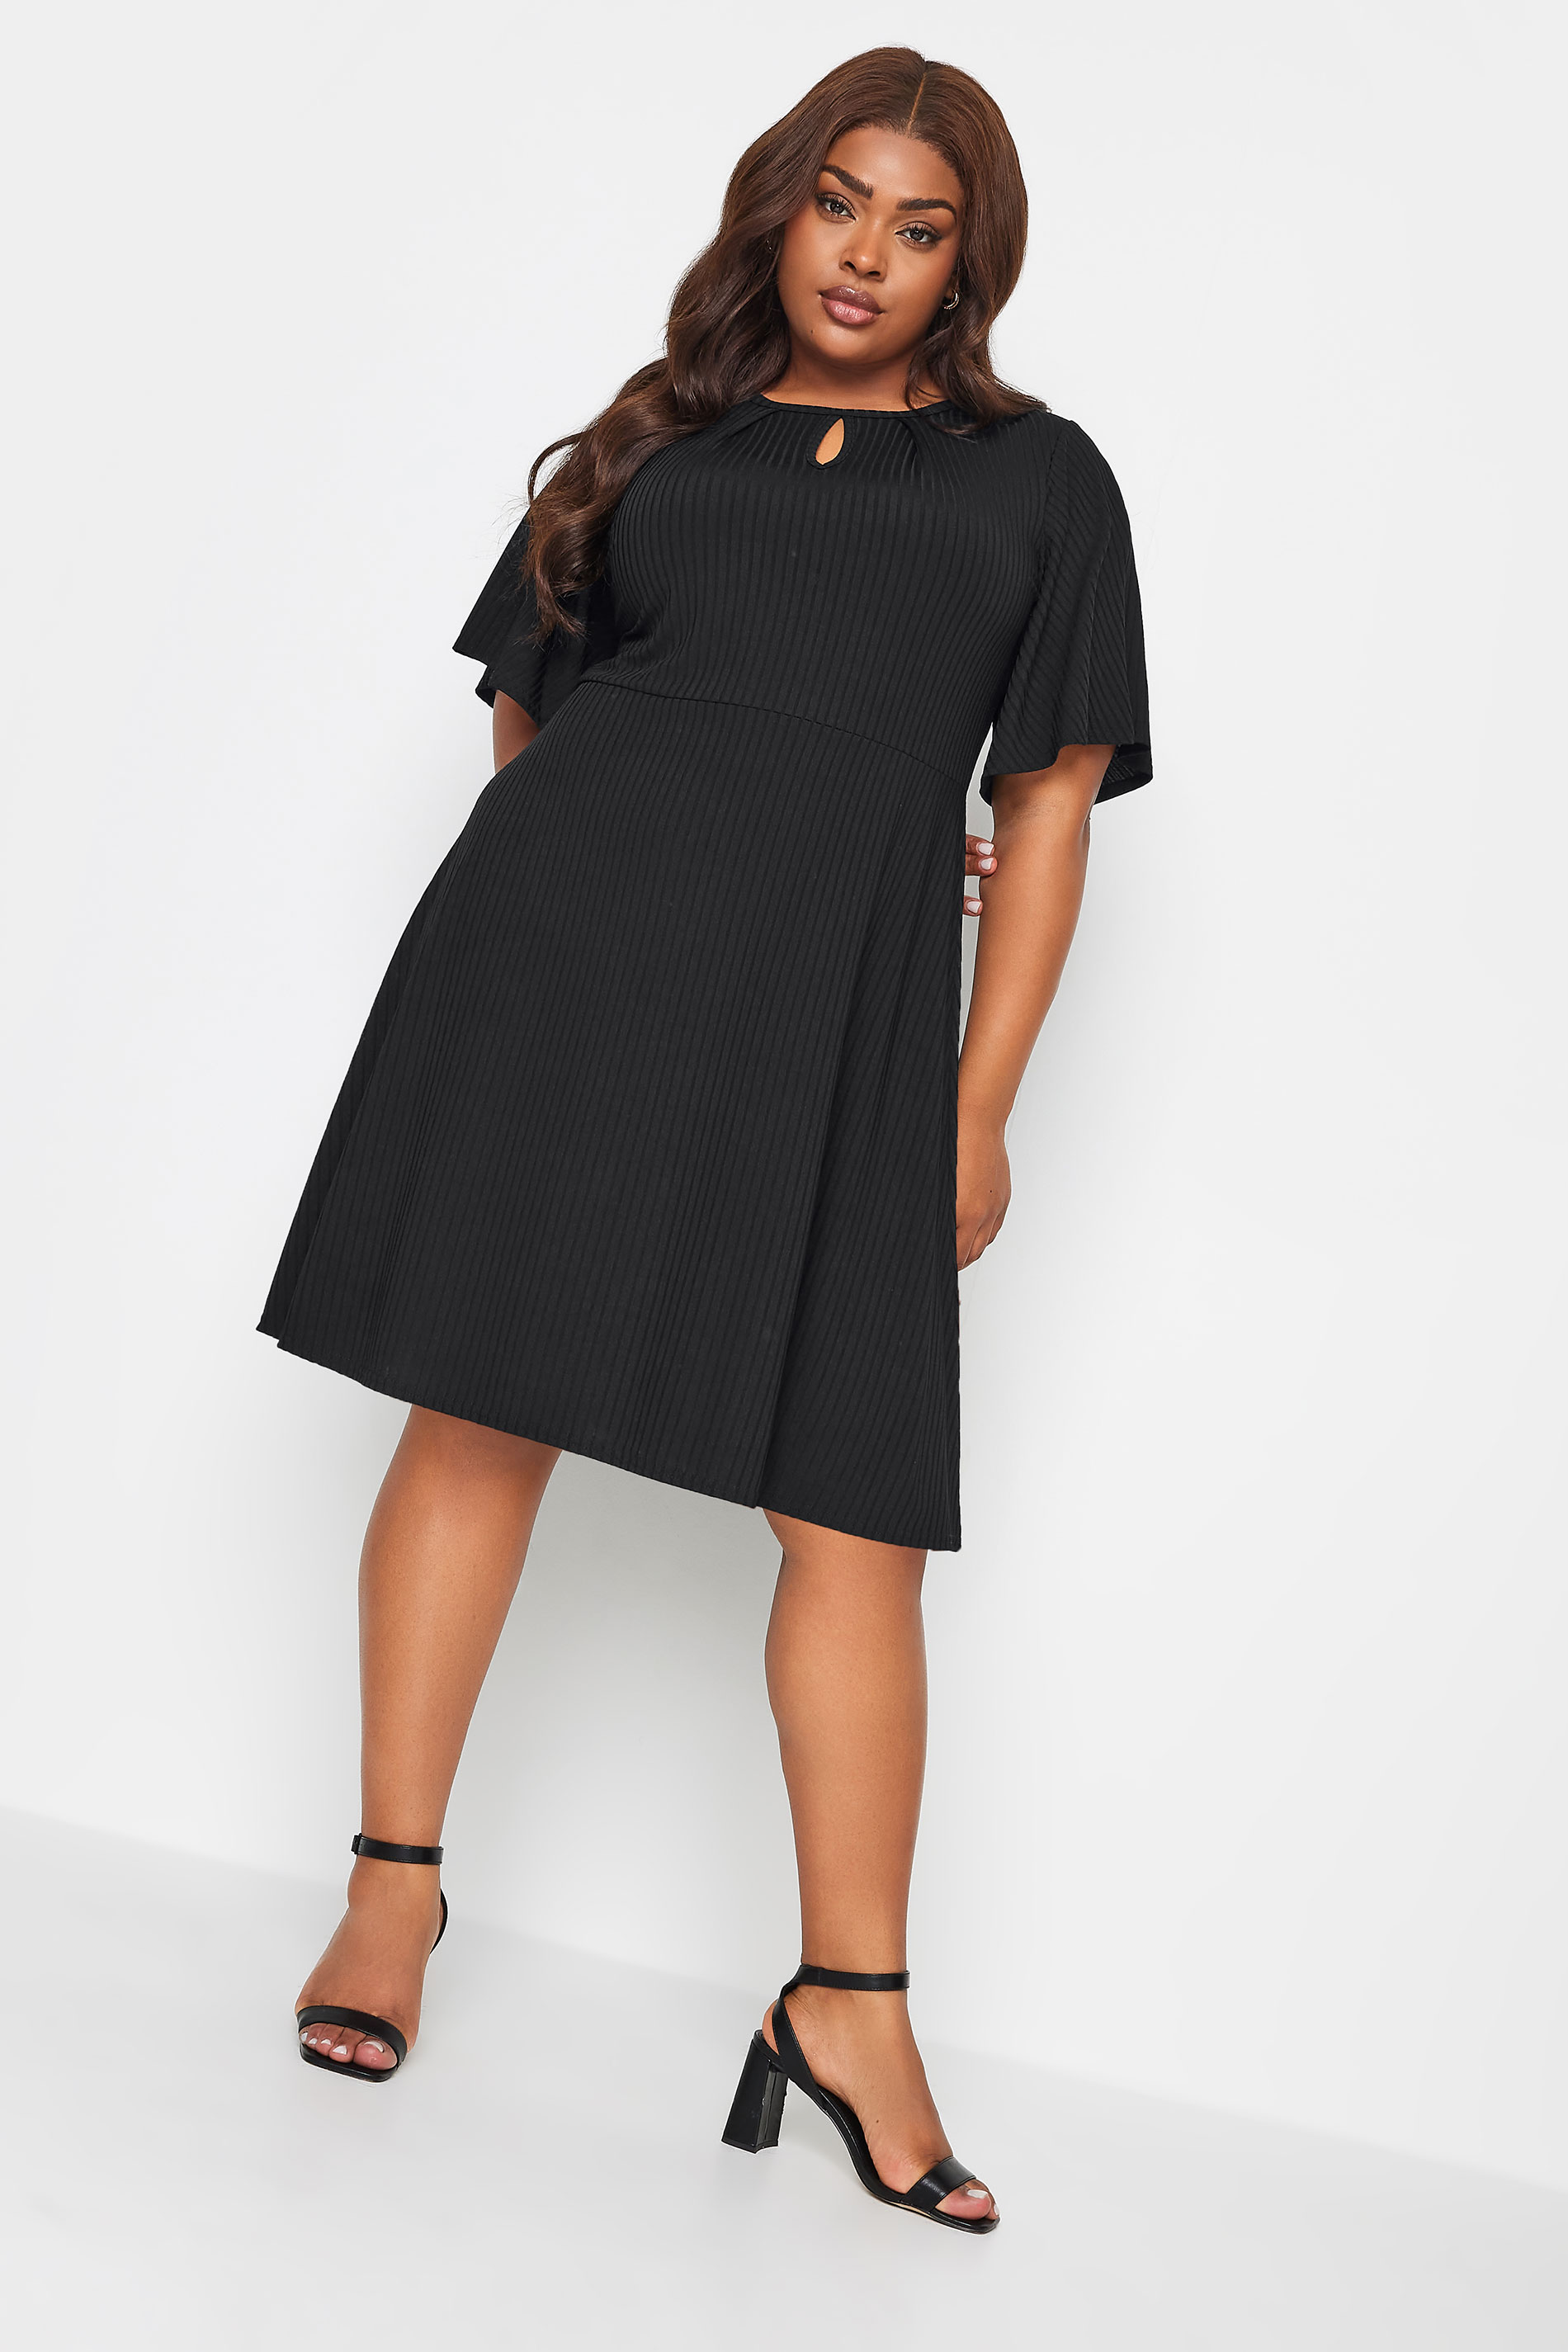 YOURS Plus Size Black Keyhole Mini Dress | Yours Clothing 1